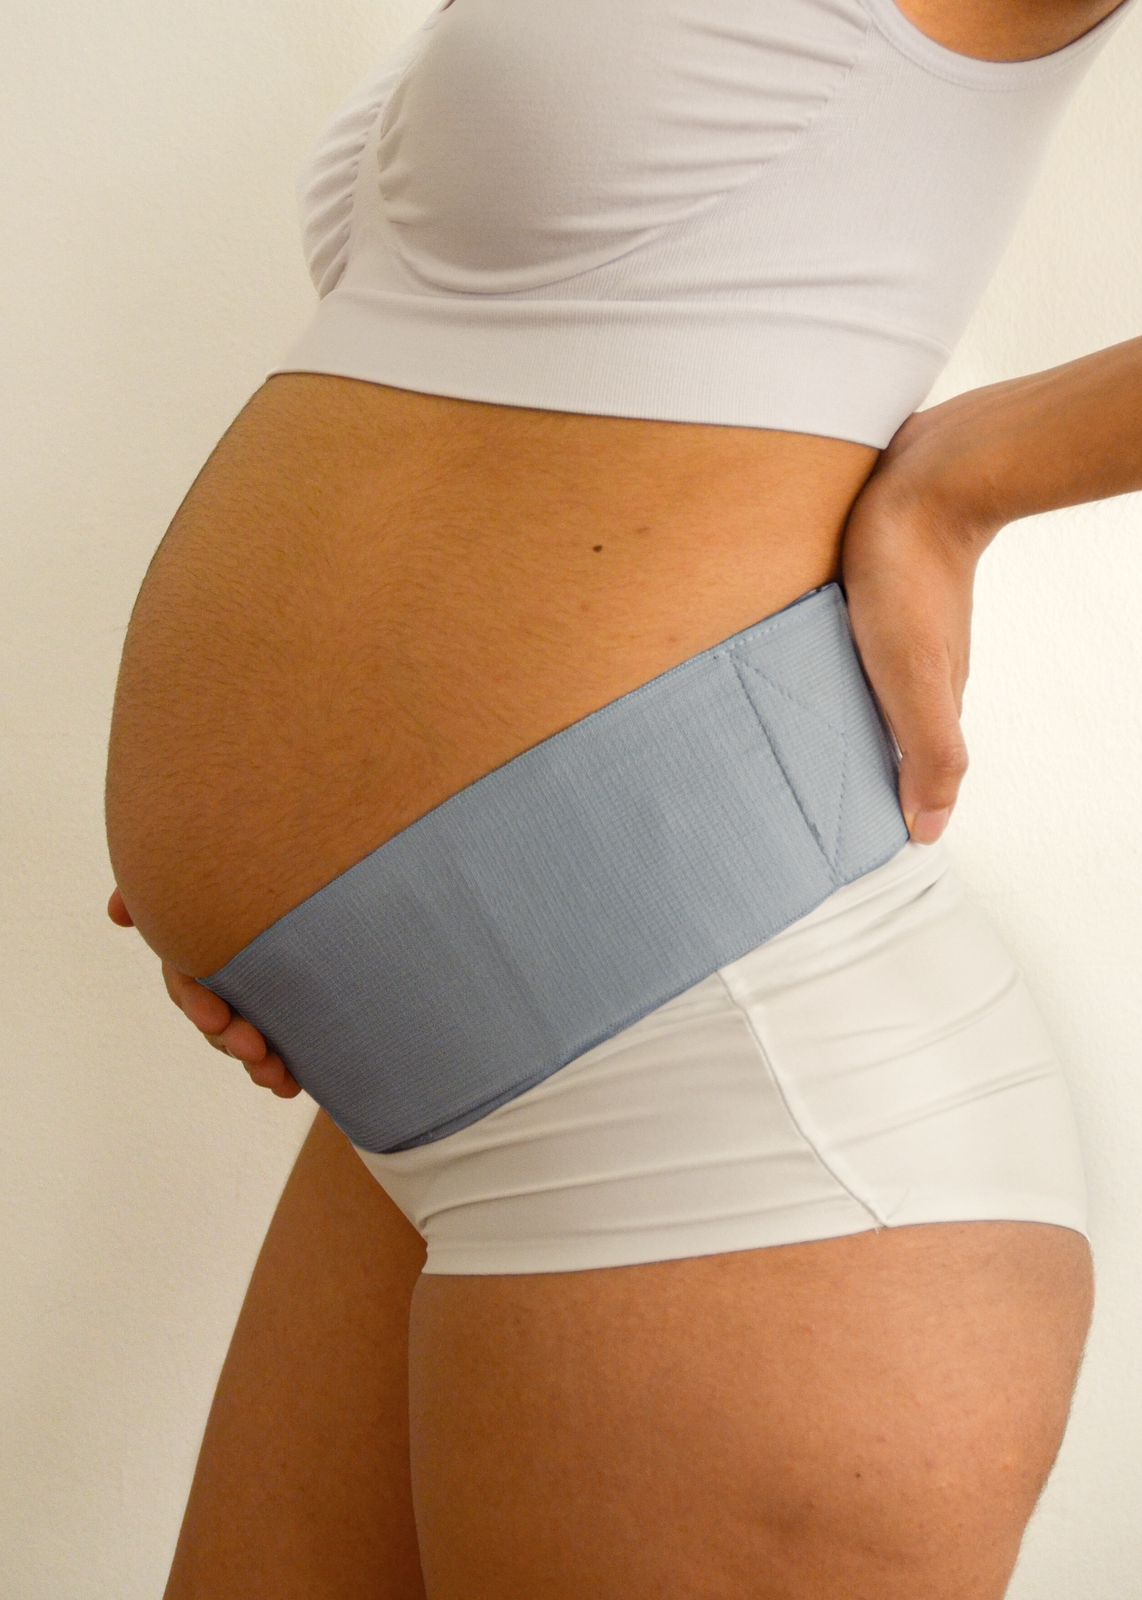 Faja Prenatal (soporte abdominal) Gris